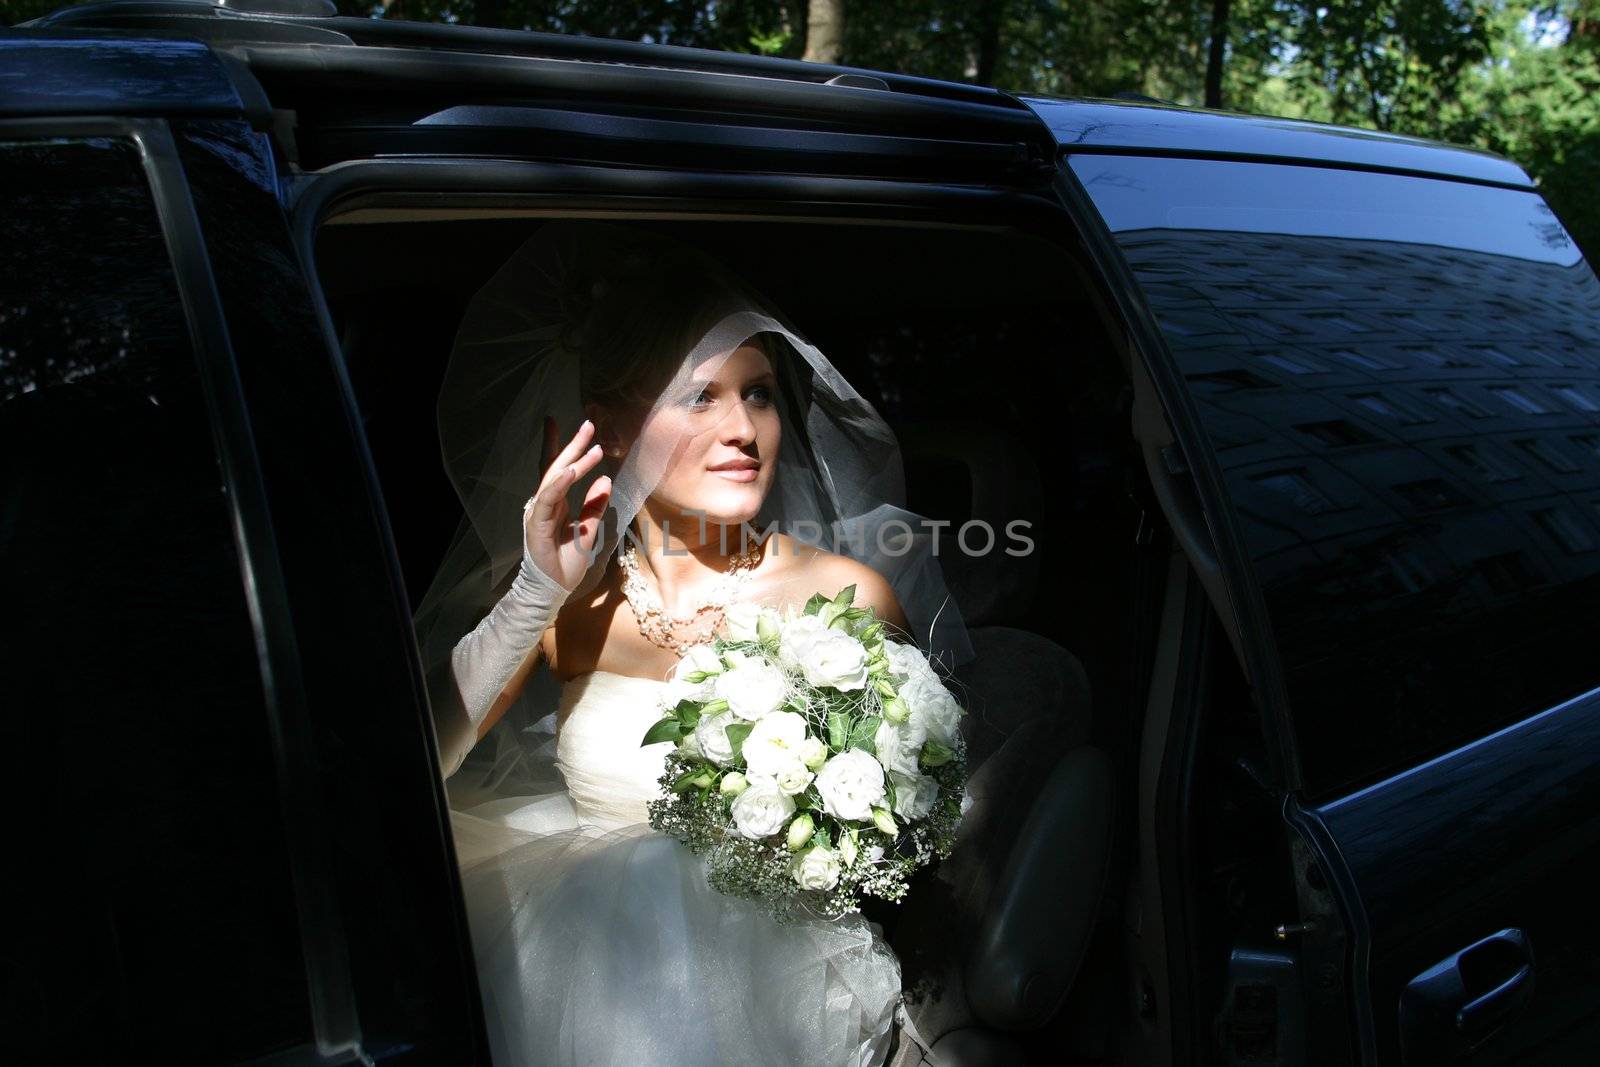 The beautiful bride in a car